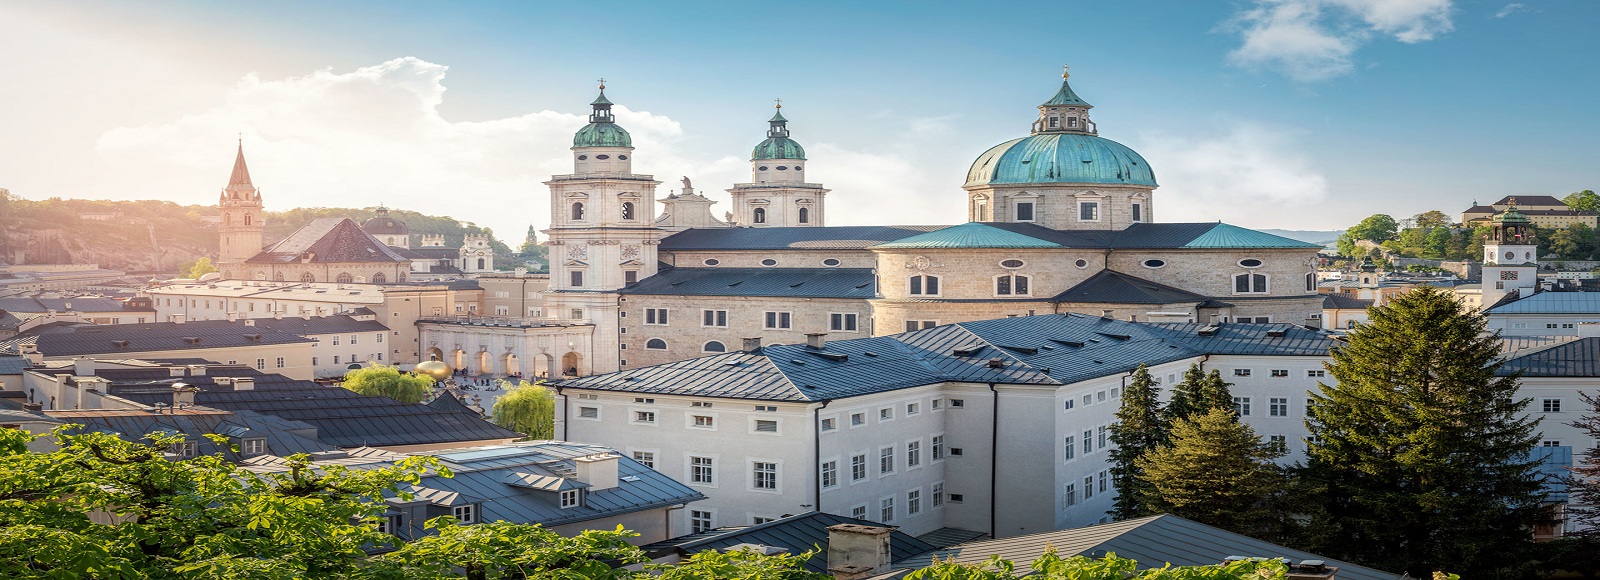 Ofertas de Traslados en Salzburg. Traslados económicos en Salzburg 